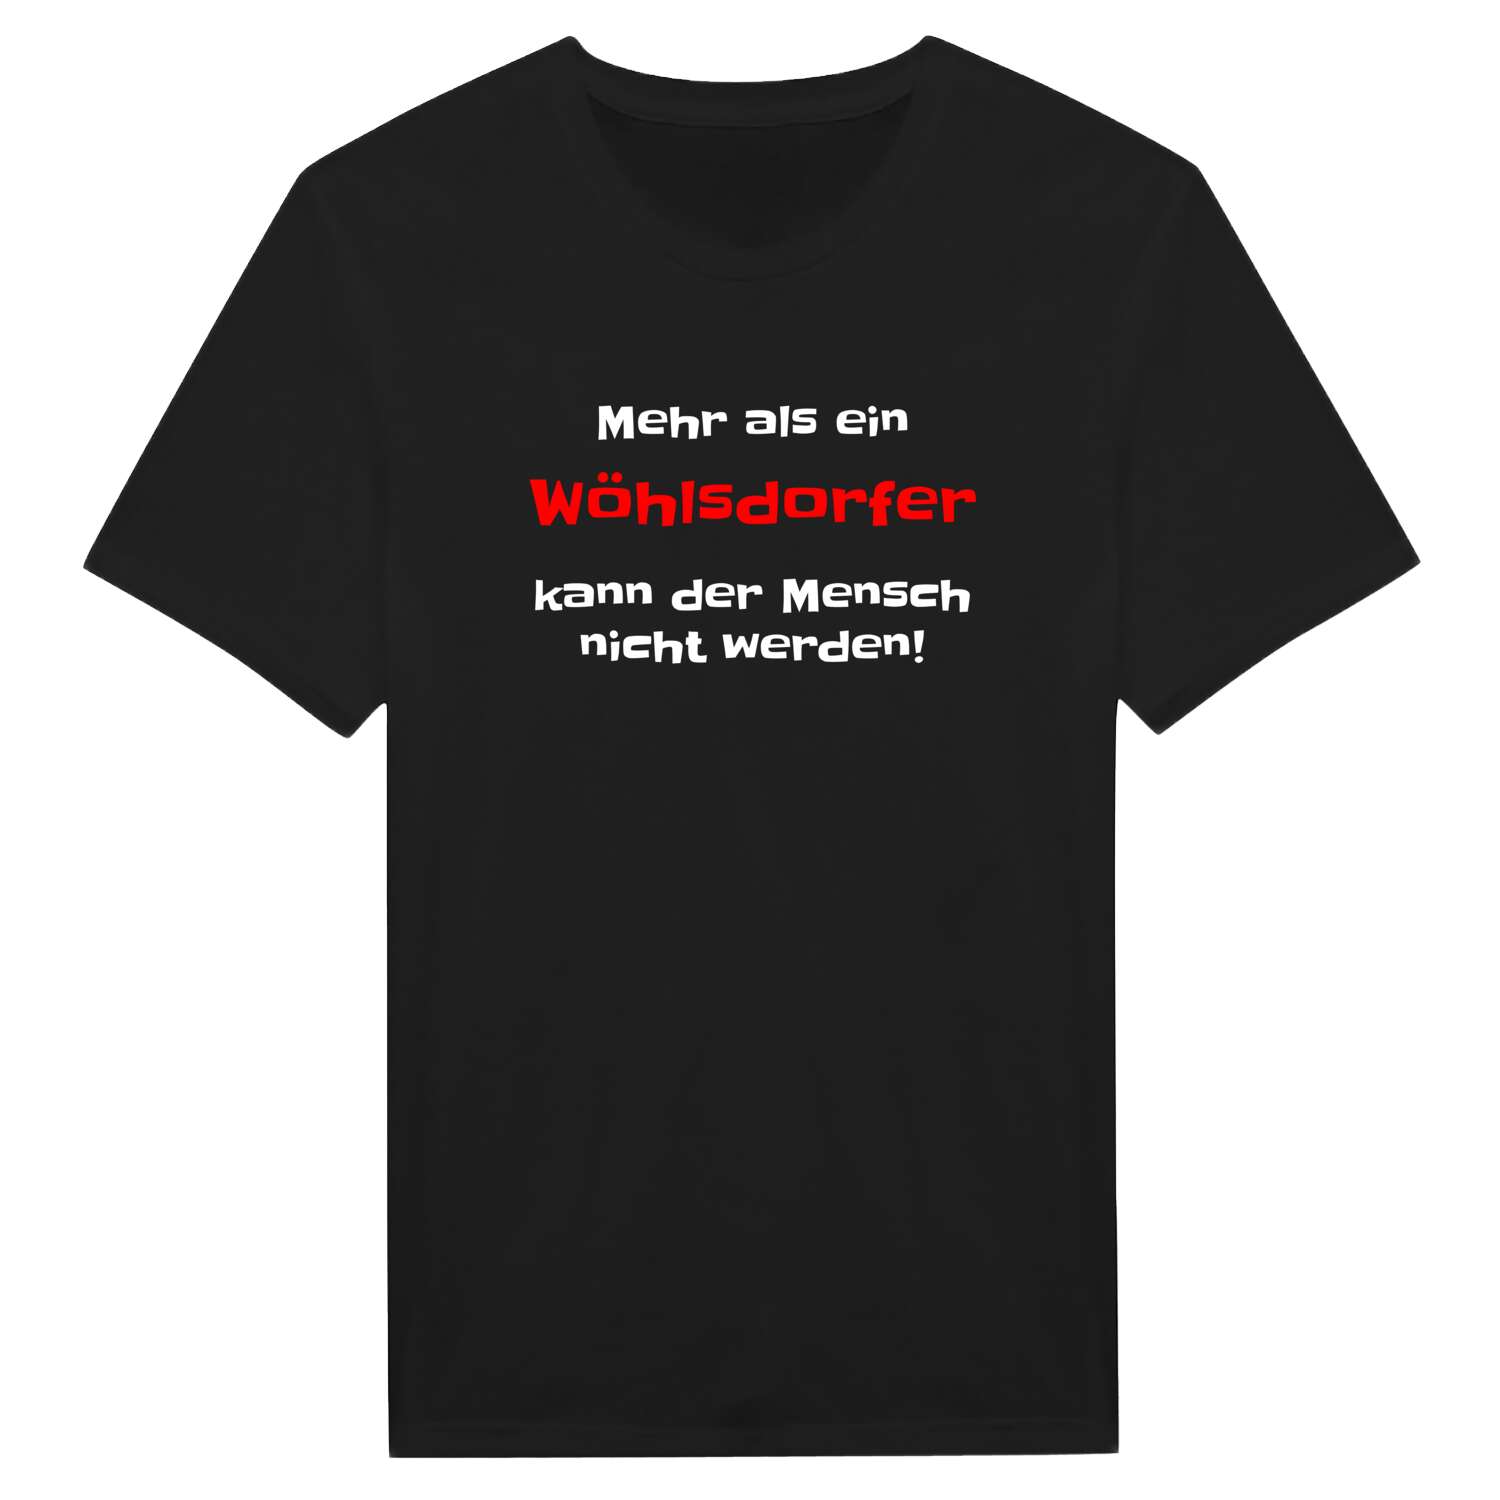 Wöhlsdorf T-Shirt »Mehr als ein«